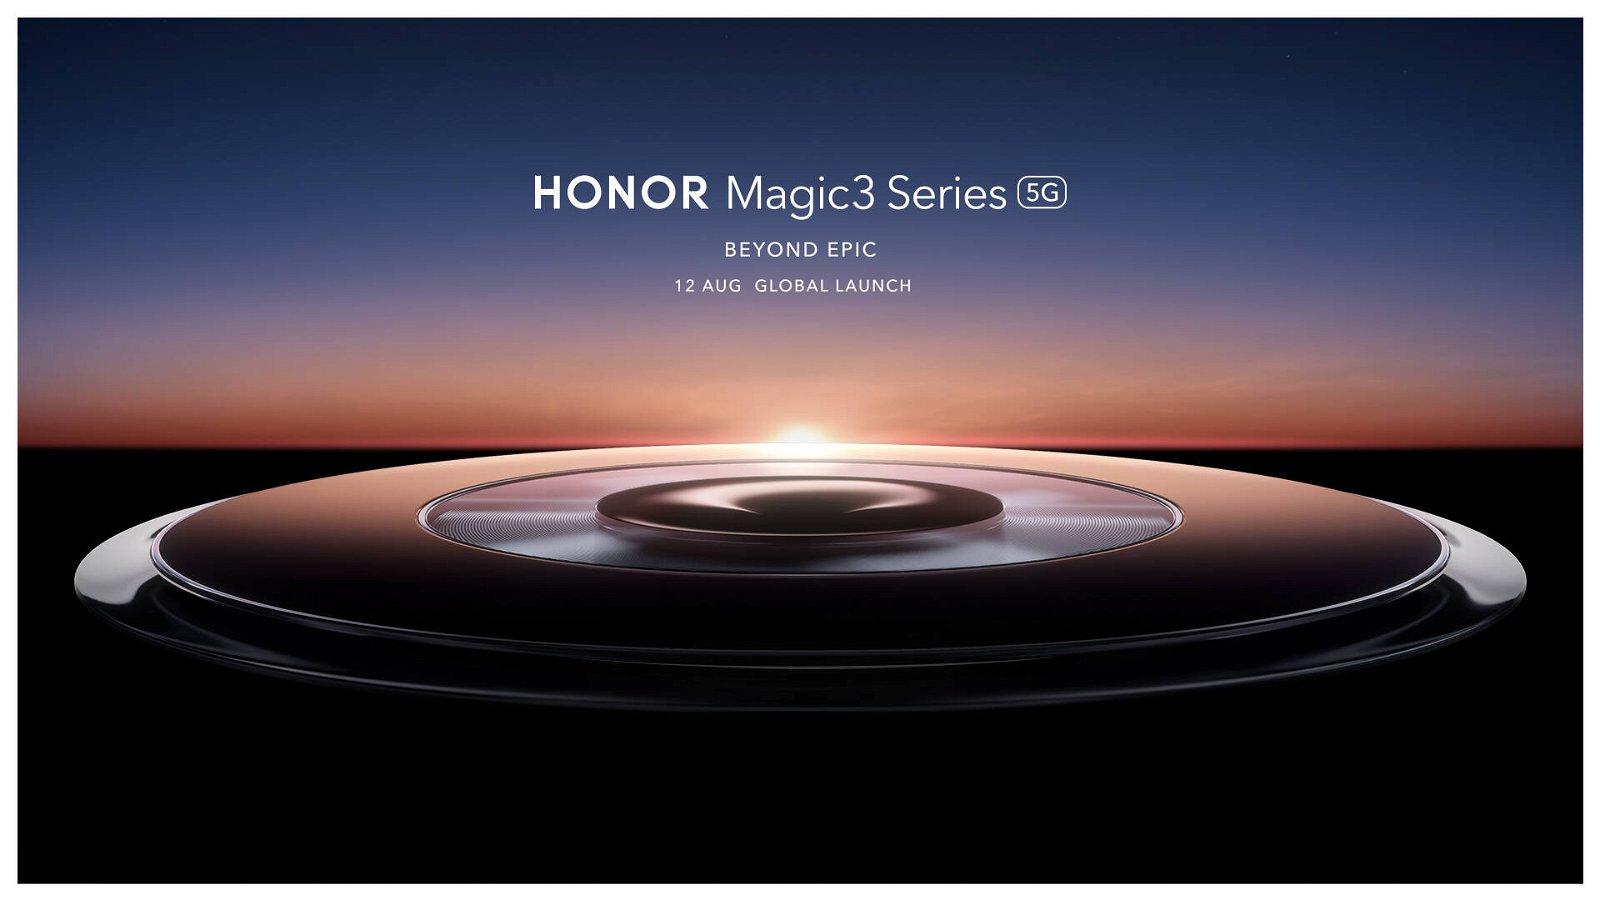 Immagine di Honor Magic3 Series 5G, ufficiale l'annuncio ad agosto